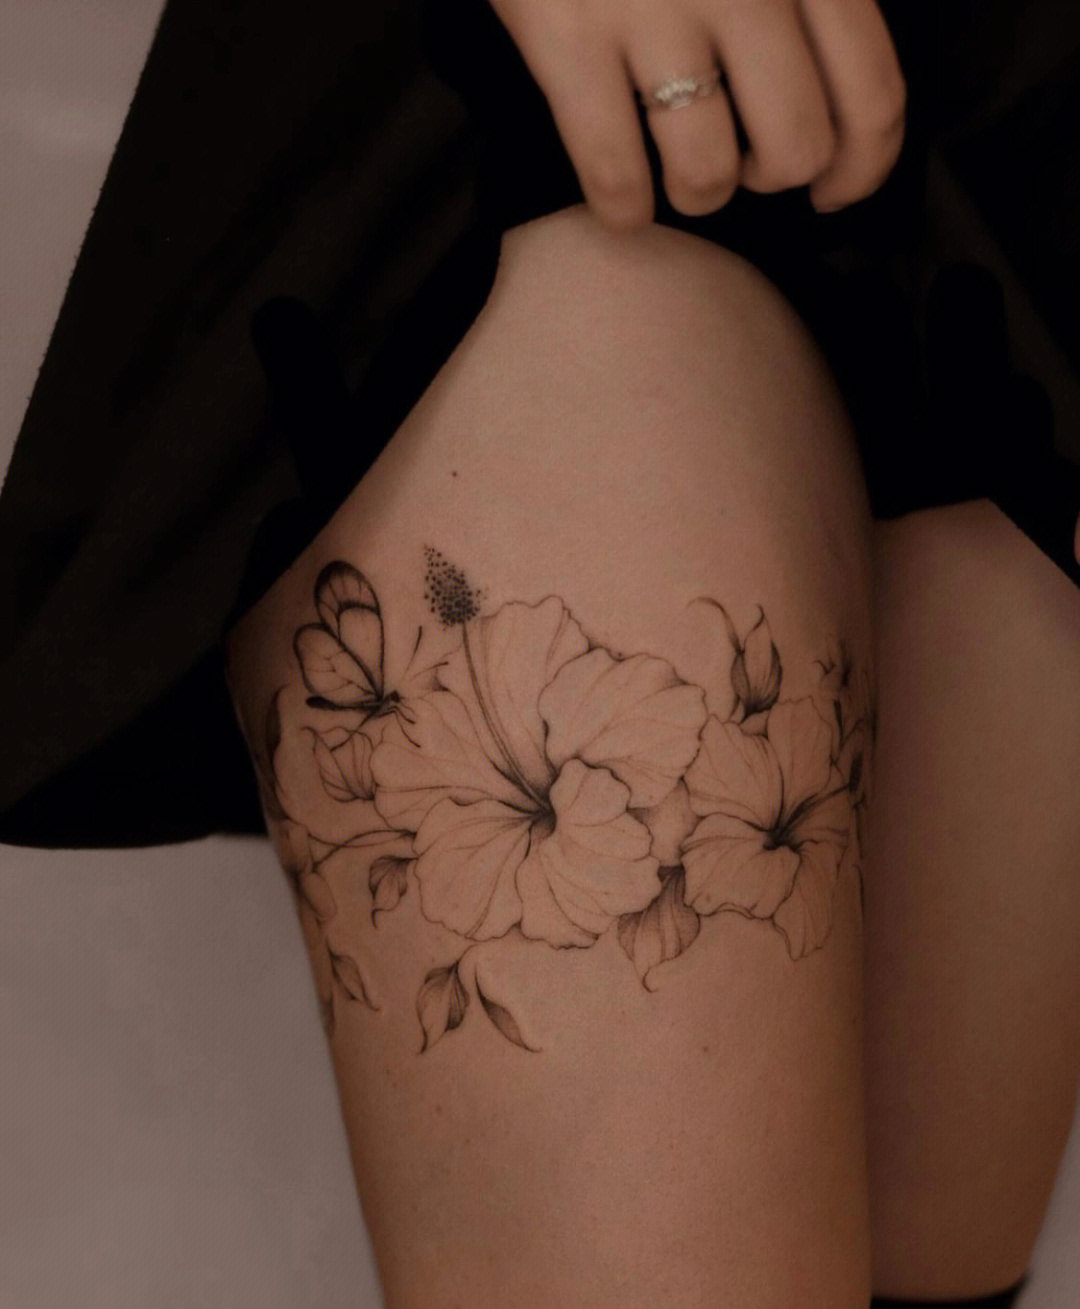 女生腿环纹身手稿图片